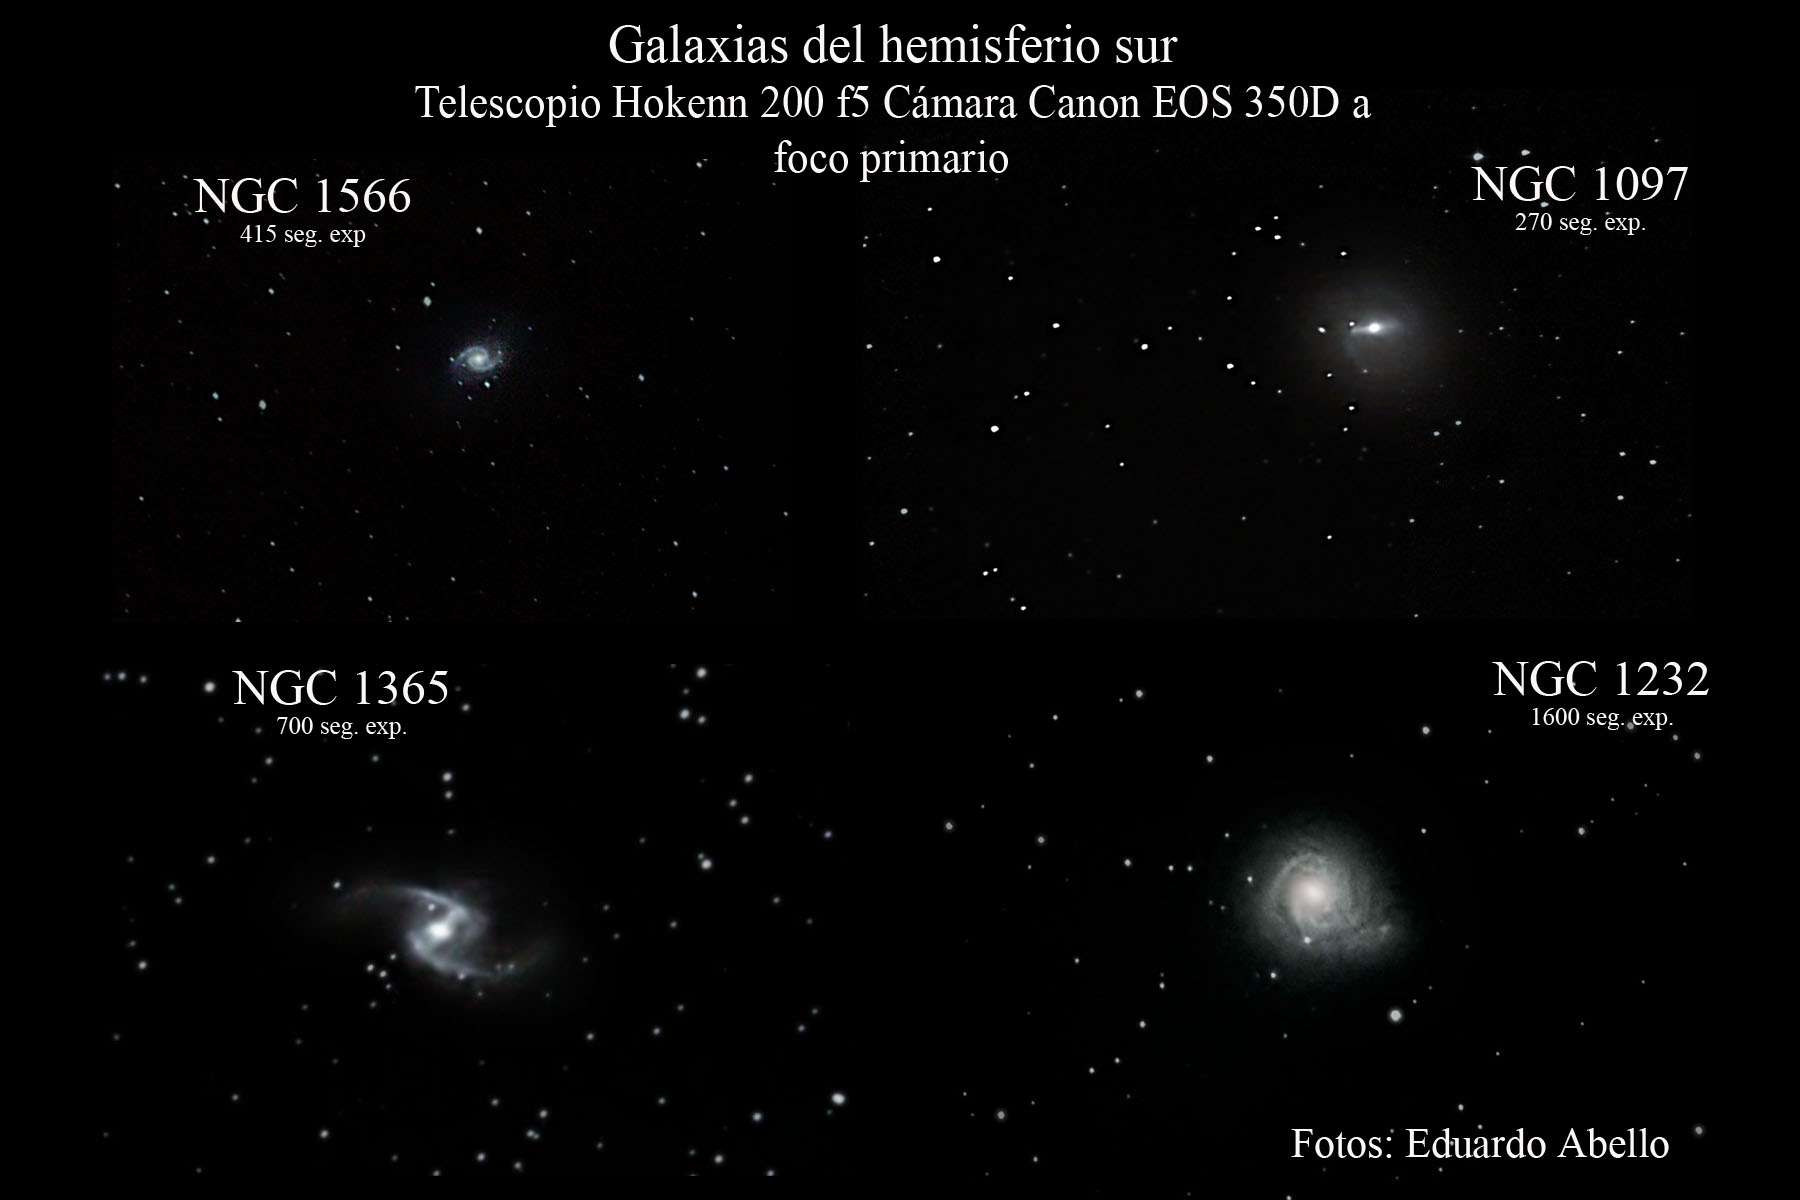 5776b486d6363_GalaxiasHemSur.jpg.3f55056